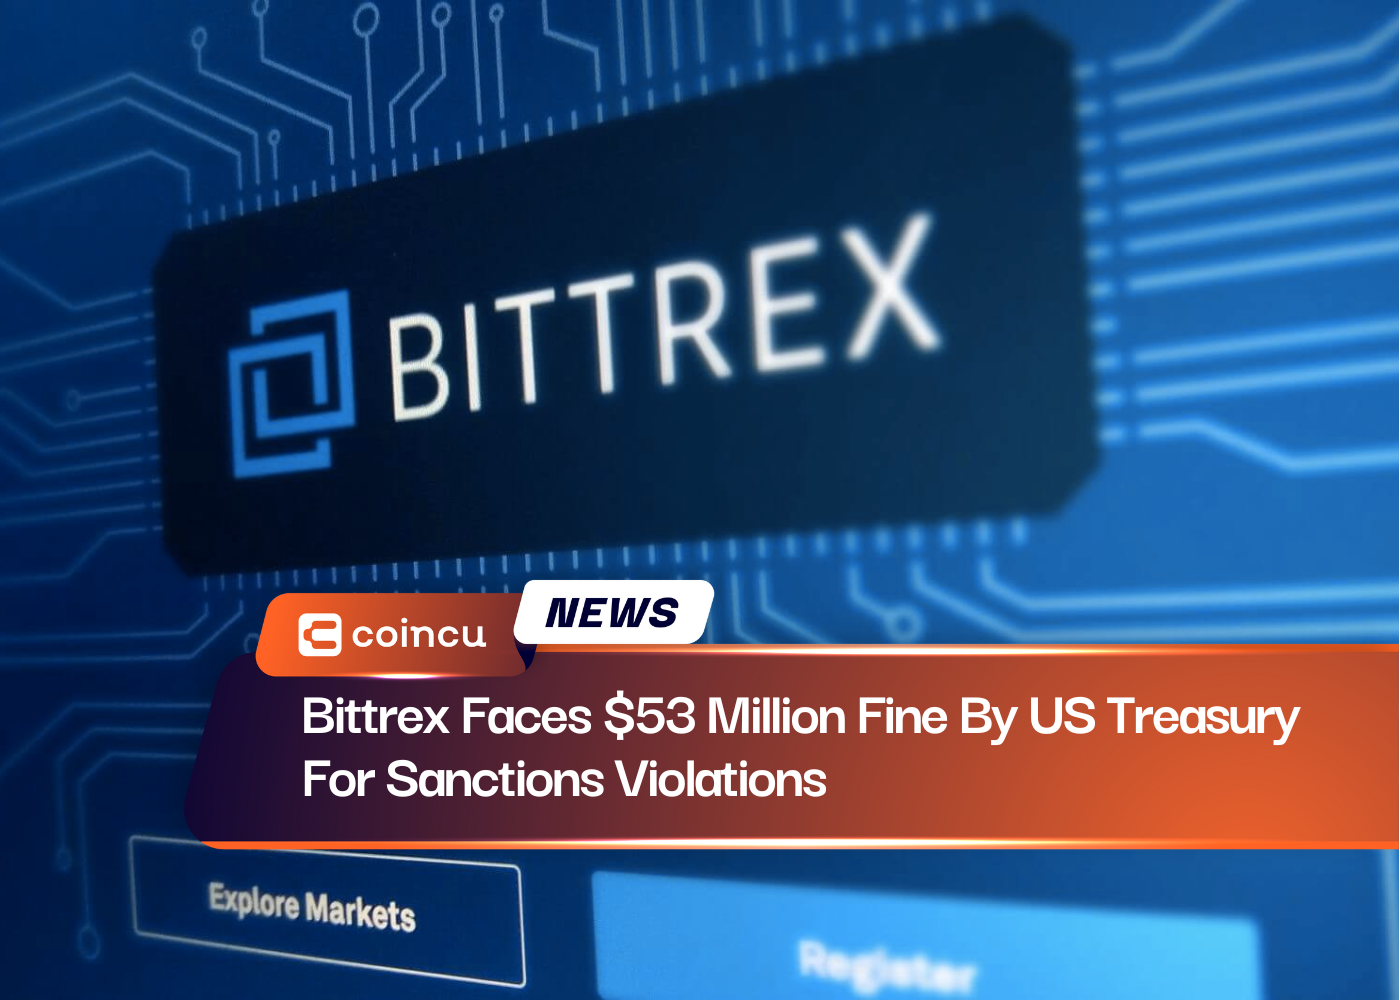 Bittrex muss wegen Verstößen gegen Sanktionen mit einer Geldstrafe von 53 Millionen US-Dollar vom US-Finanzministerium rechnen